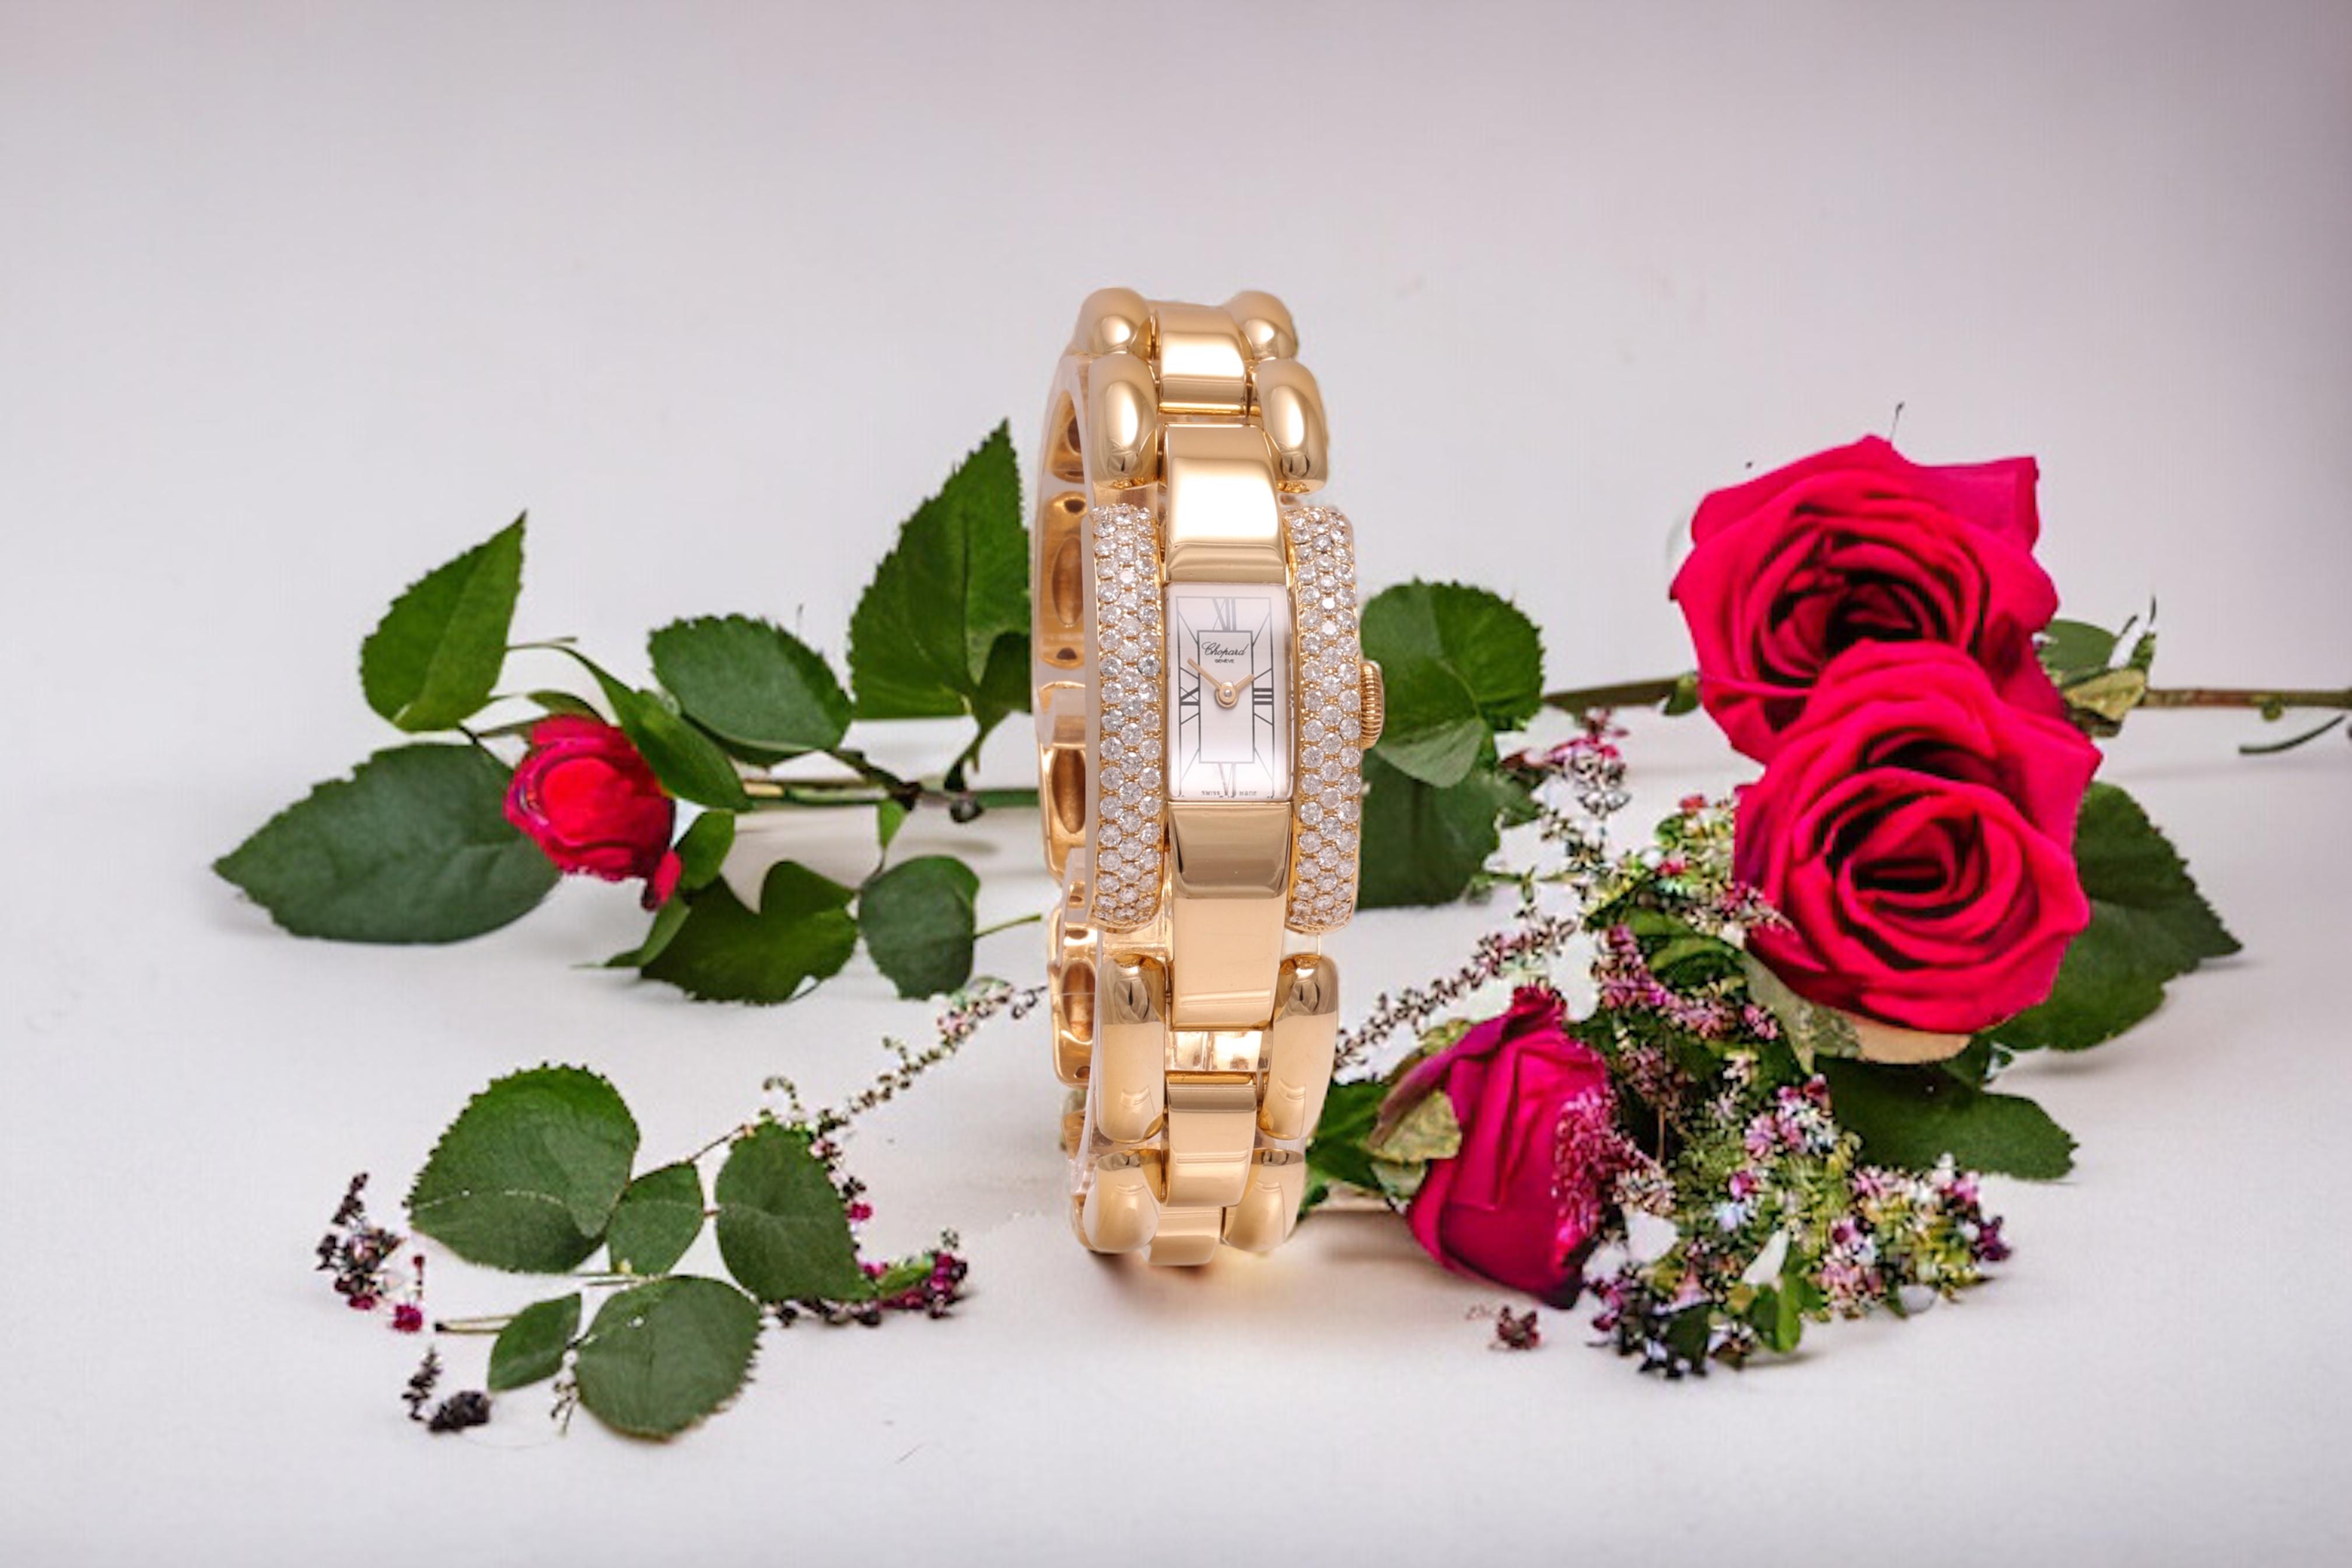 18 Kt. Gold & Diamonds Chopard La Strada Wrist Watch For Sale 7